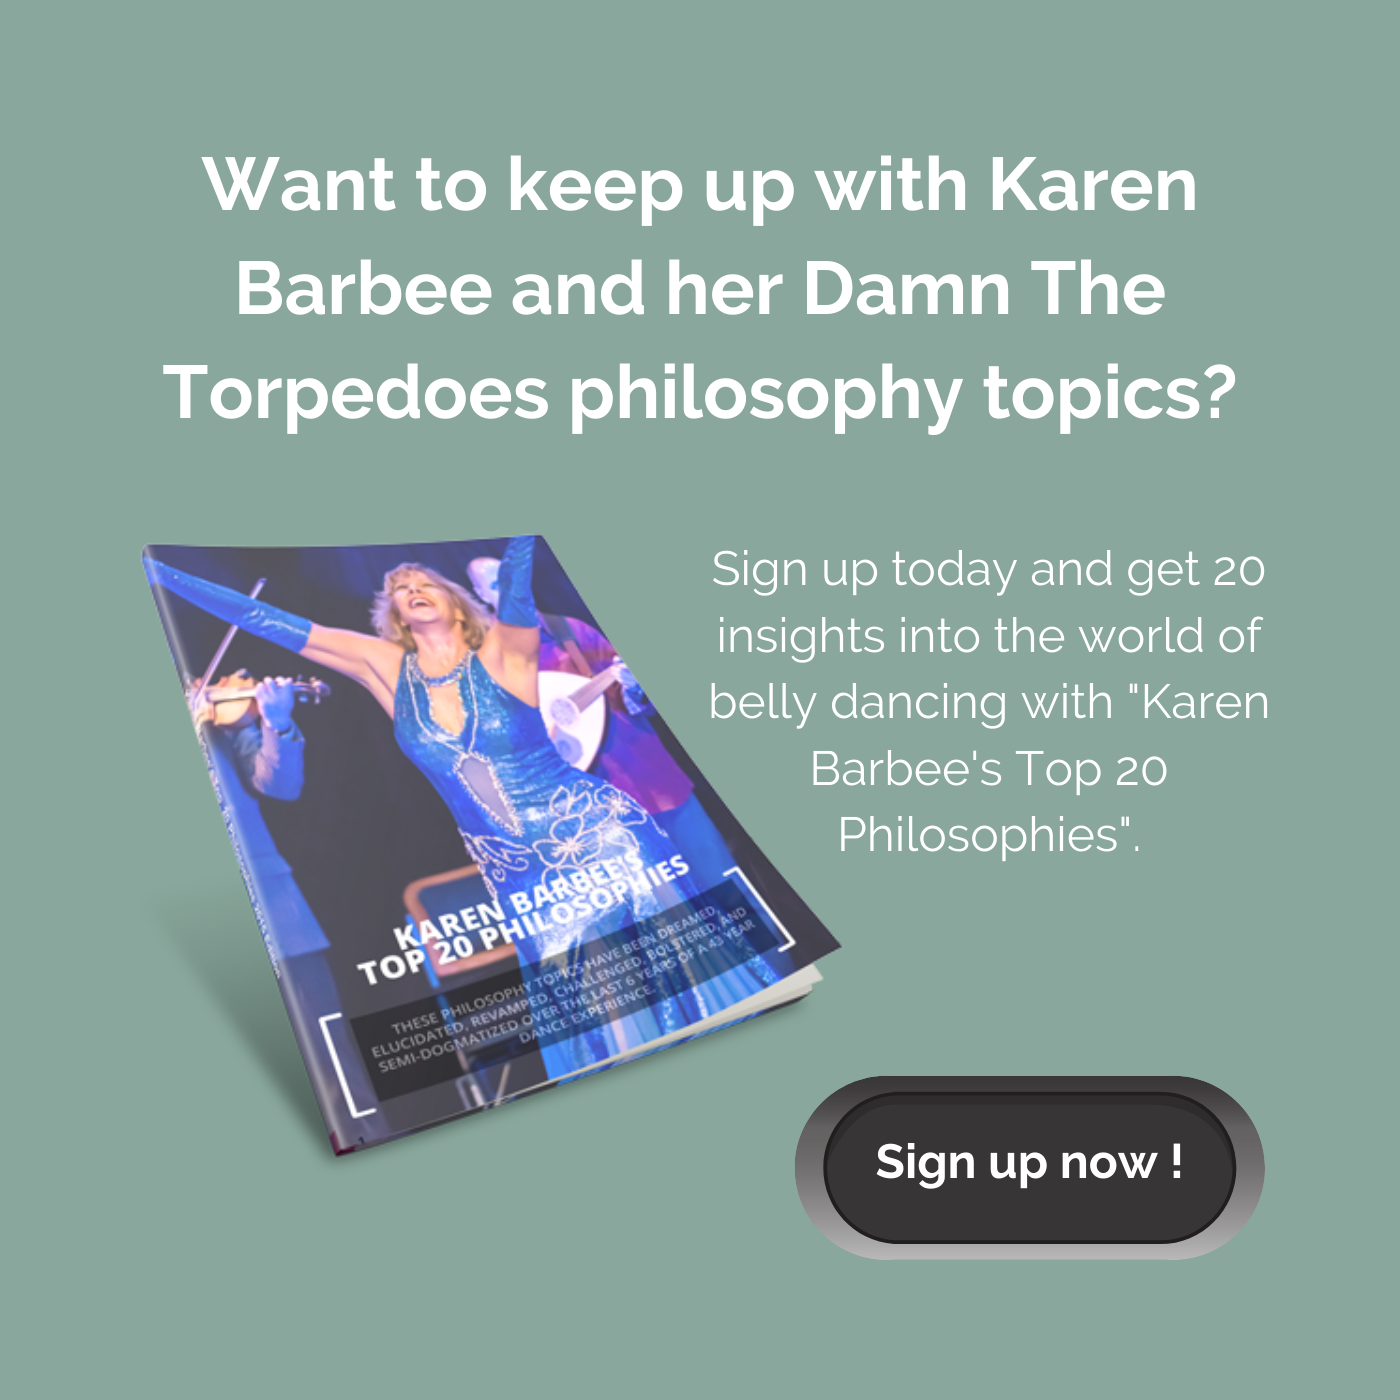 Keep up with Karen Barbee